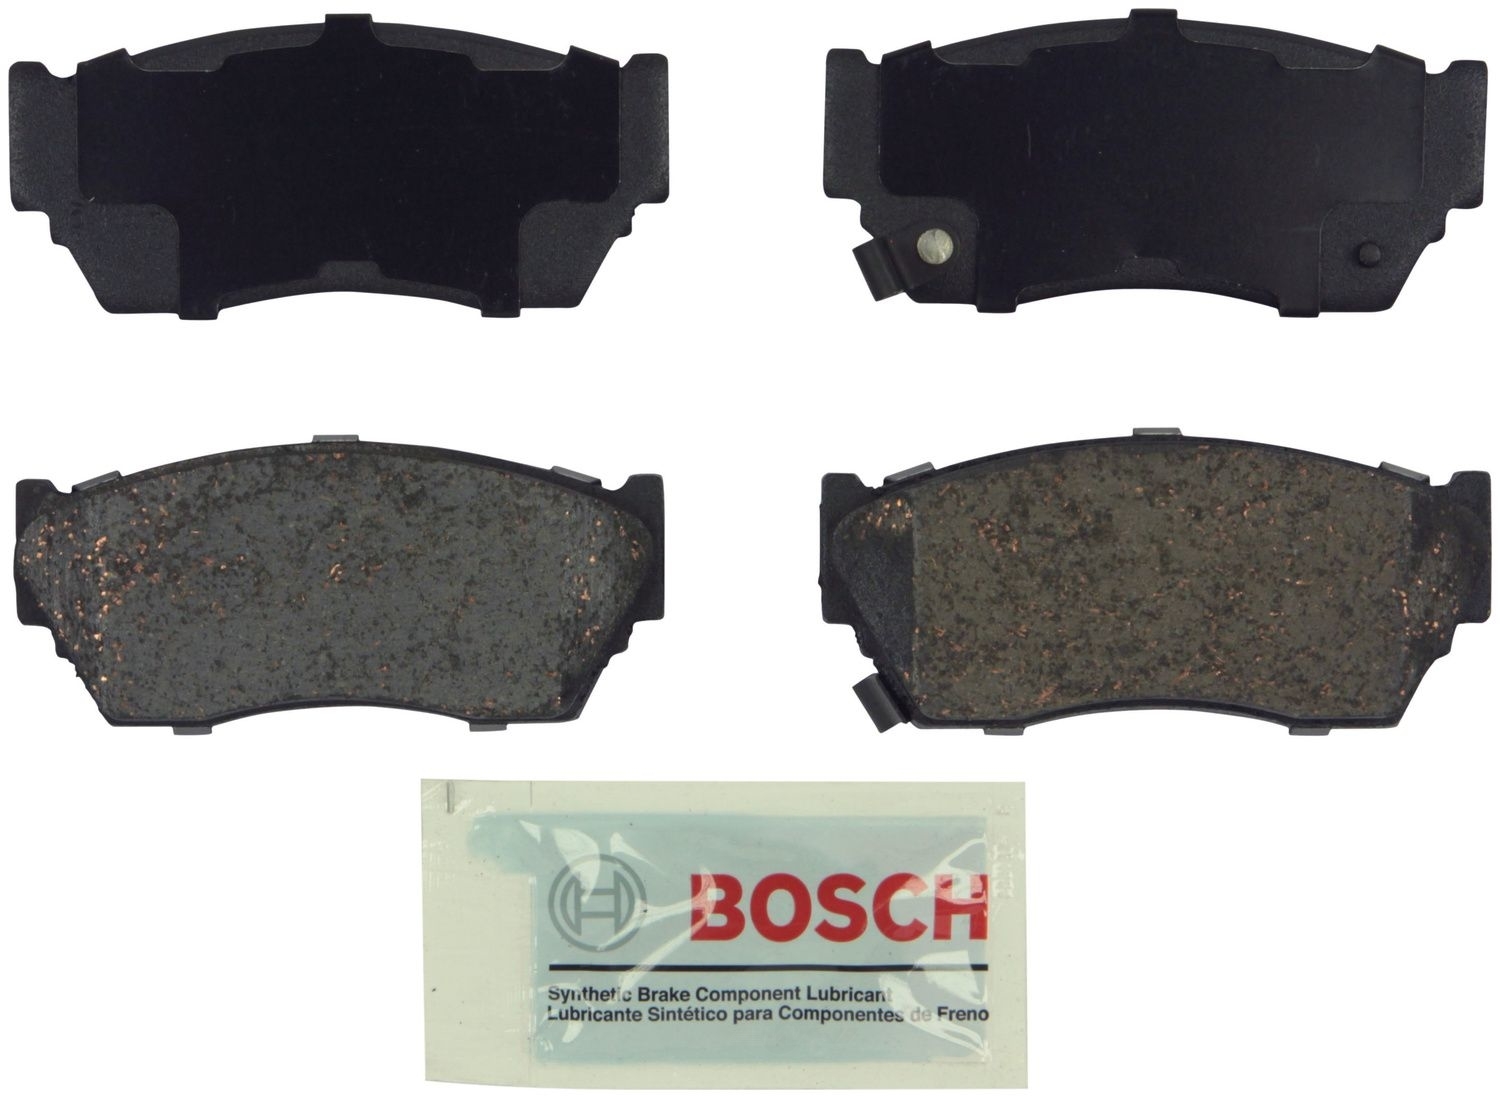 BOSCH BRAKE - Bosch Blue Ceramic Brake Pads - BQC BE510